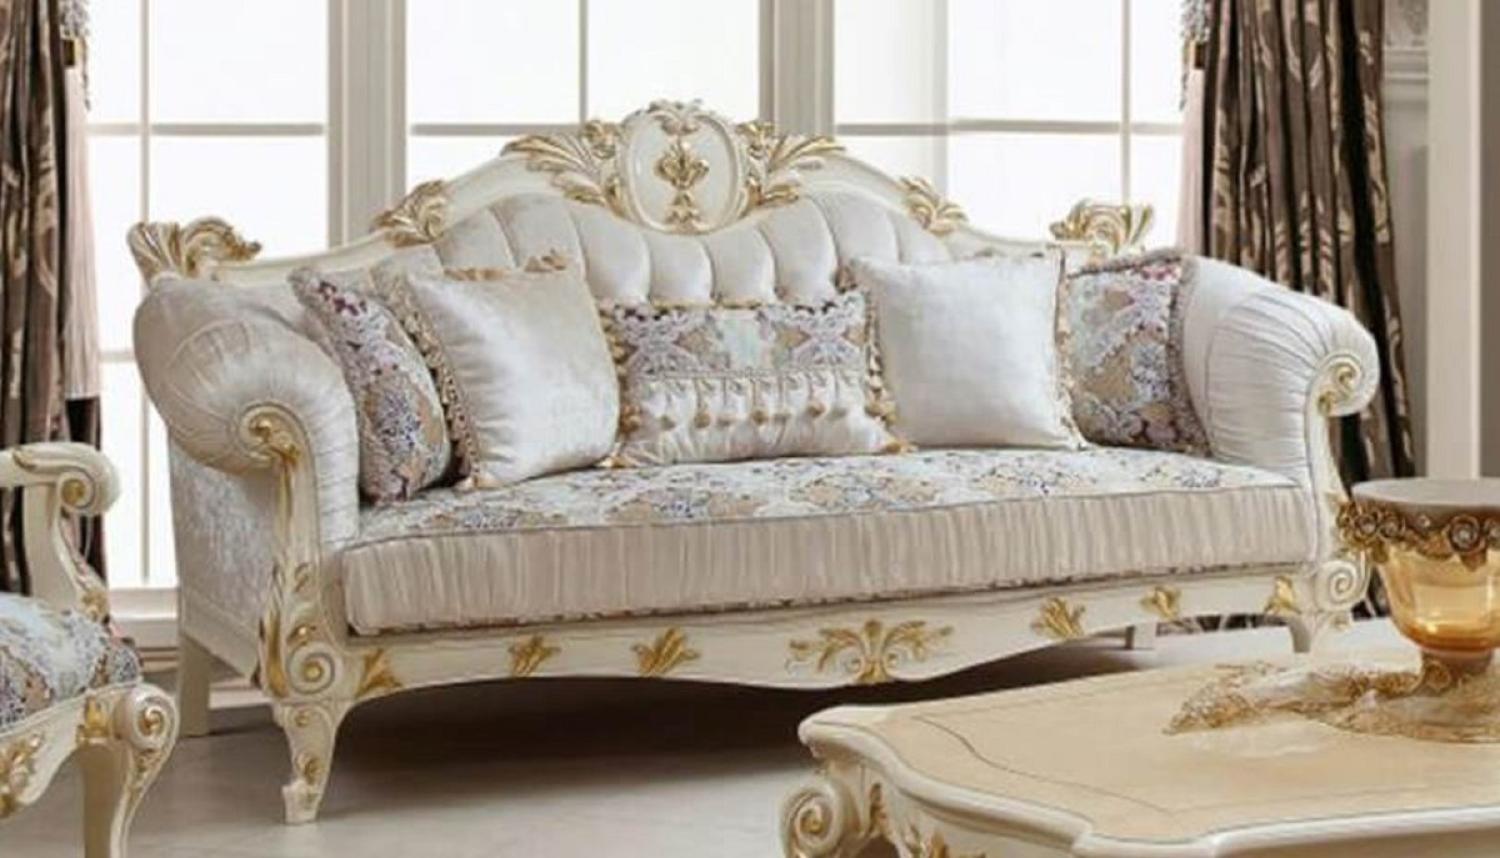 Casa Padrino Luxus Barock Sofa Weiß / Mehrfarbig / Creme / Gold - Prunkvolles Wohnzimmer Sofa mit elegantem Muster - Barockstil Wohnzimmer Möbel - Luxus Möbel im Barockstil - Barock Einrichtung Bild 1